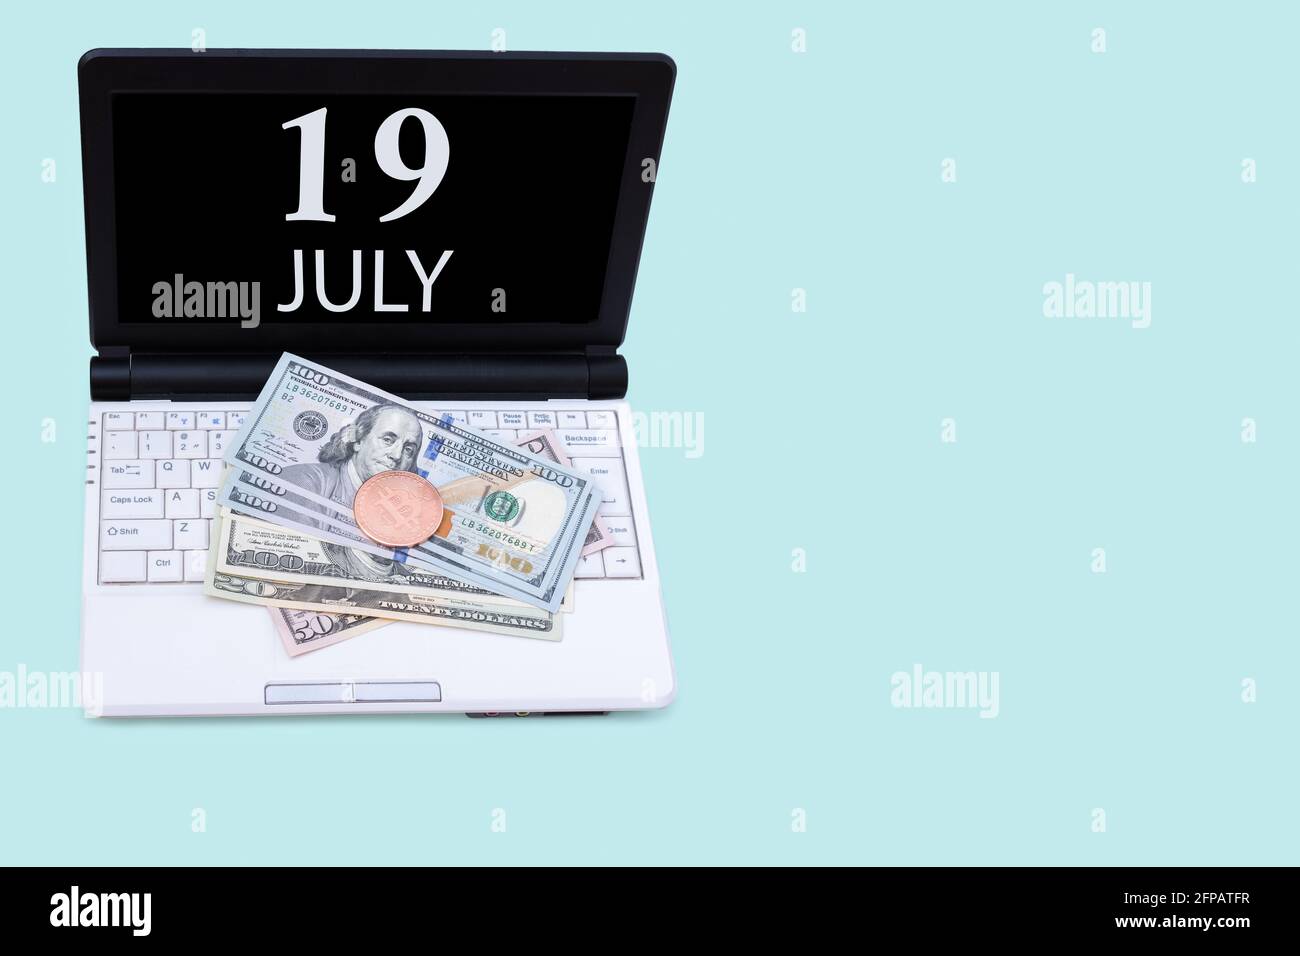 19 luglio. Laptop con la data del 19 luglio e criptovaluta Bitcoin, dollari su sfondo blu. Acquistare o vendere Cryptocurrency. Mercato azionario c Foto Stock